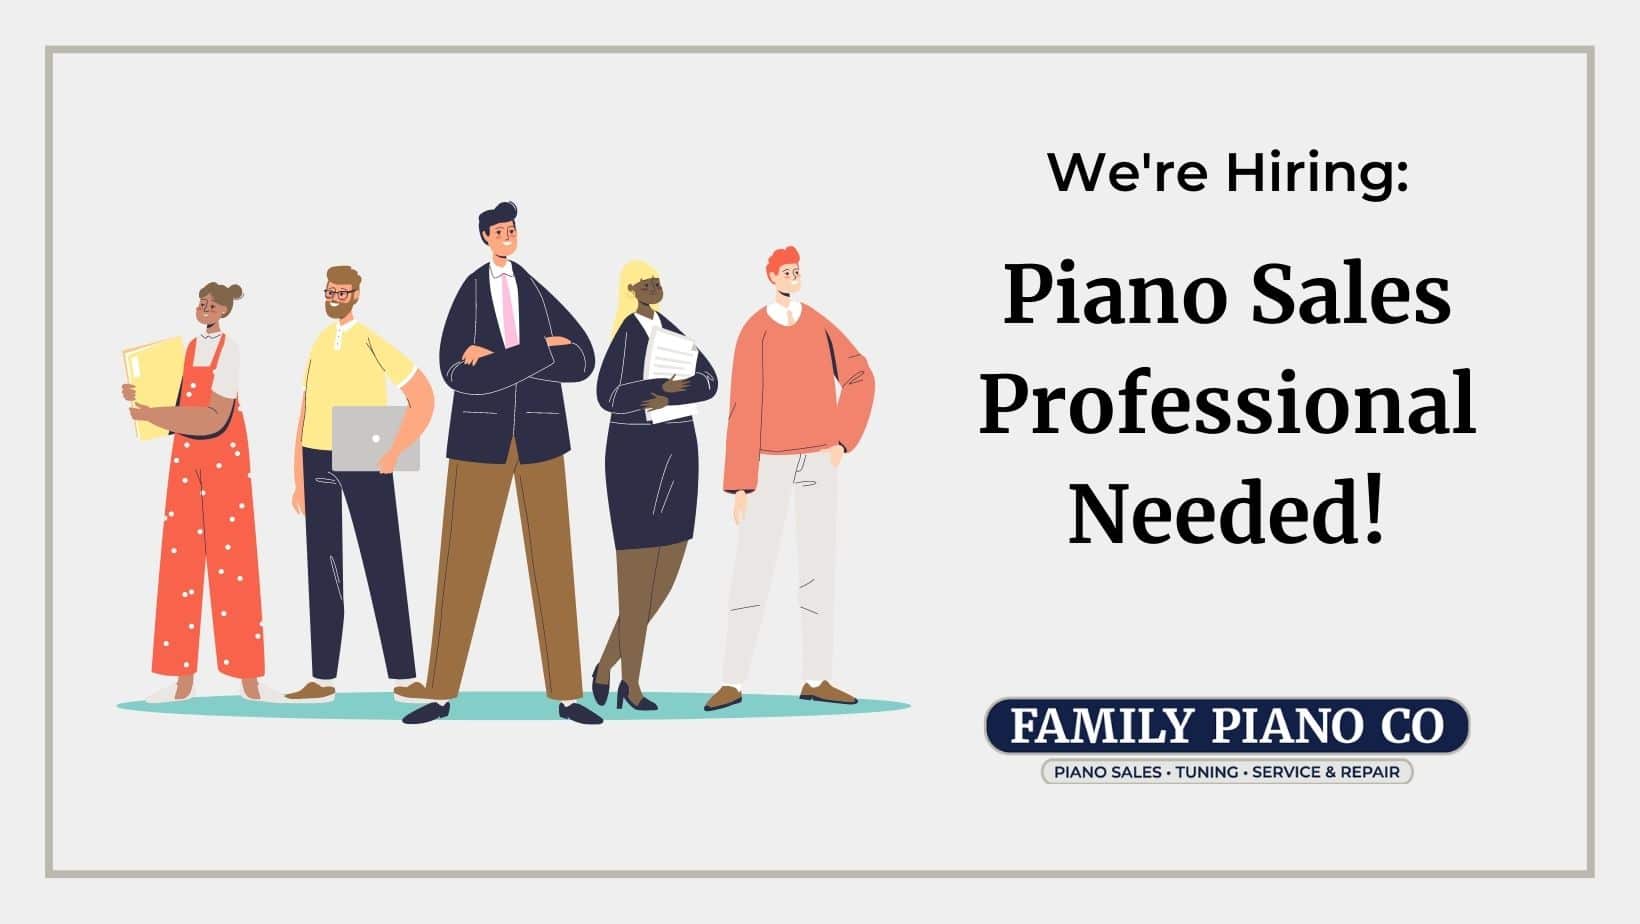 Piano Sales job listing at Family Piano Co